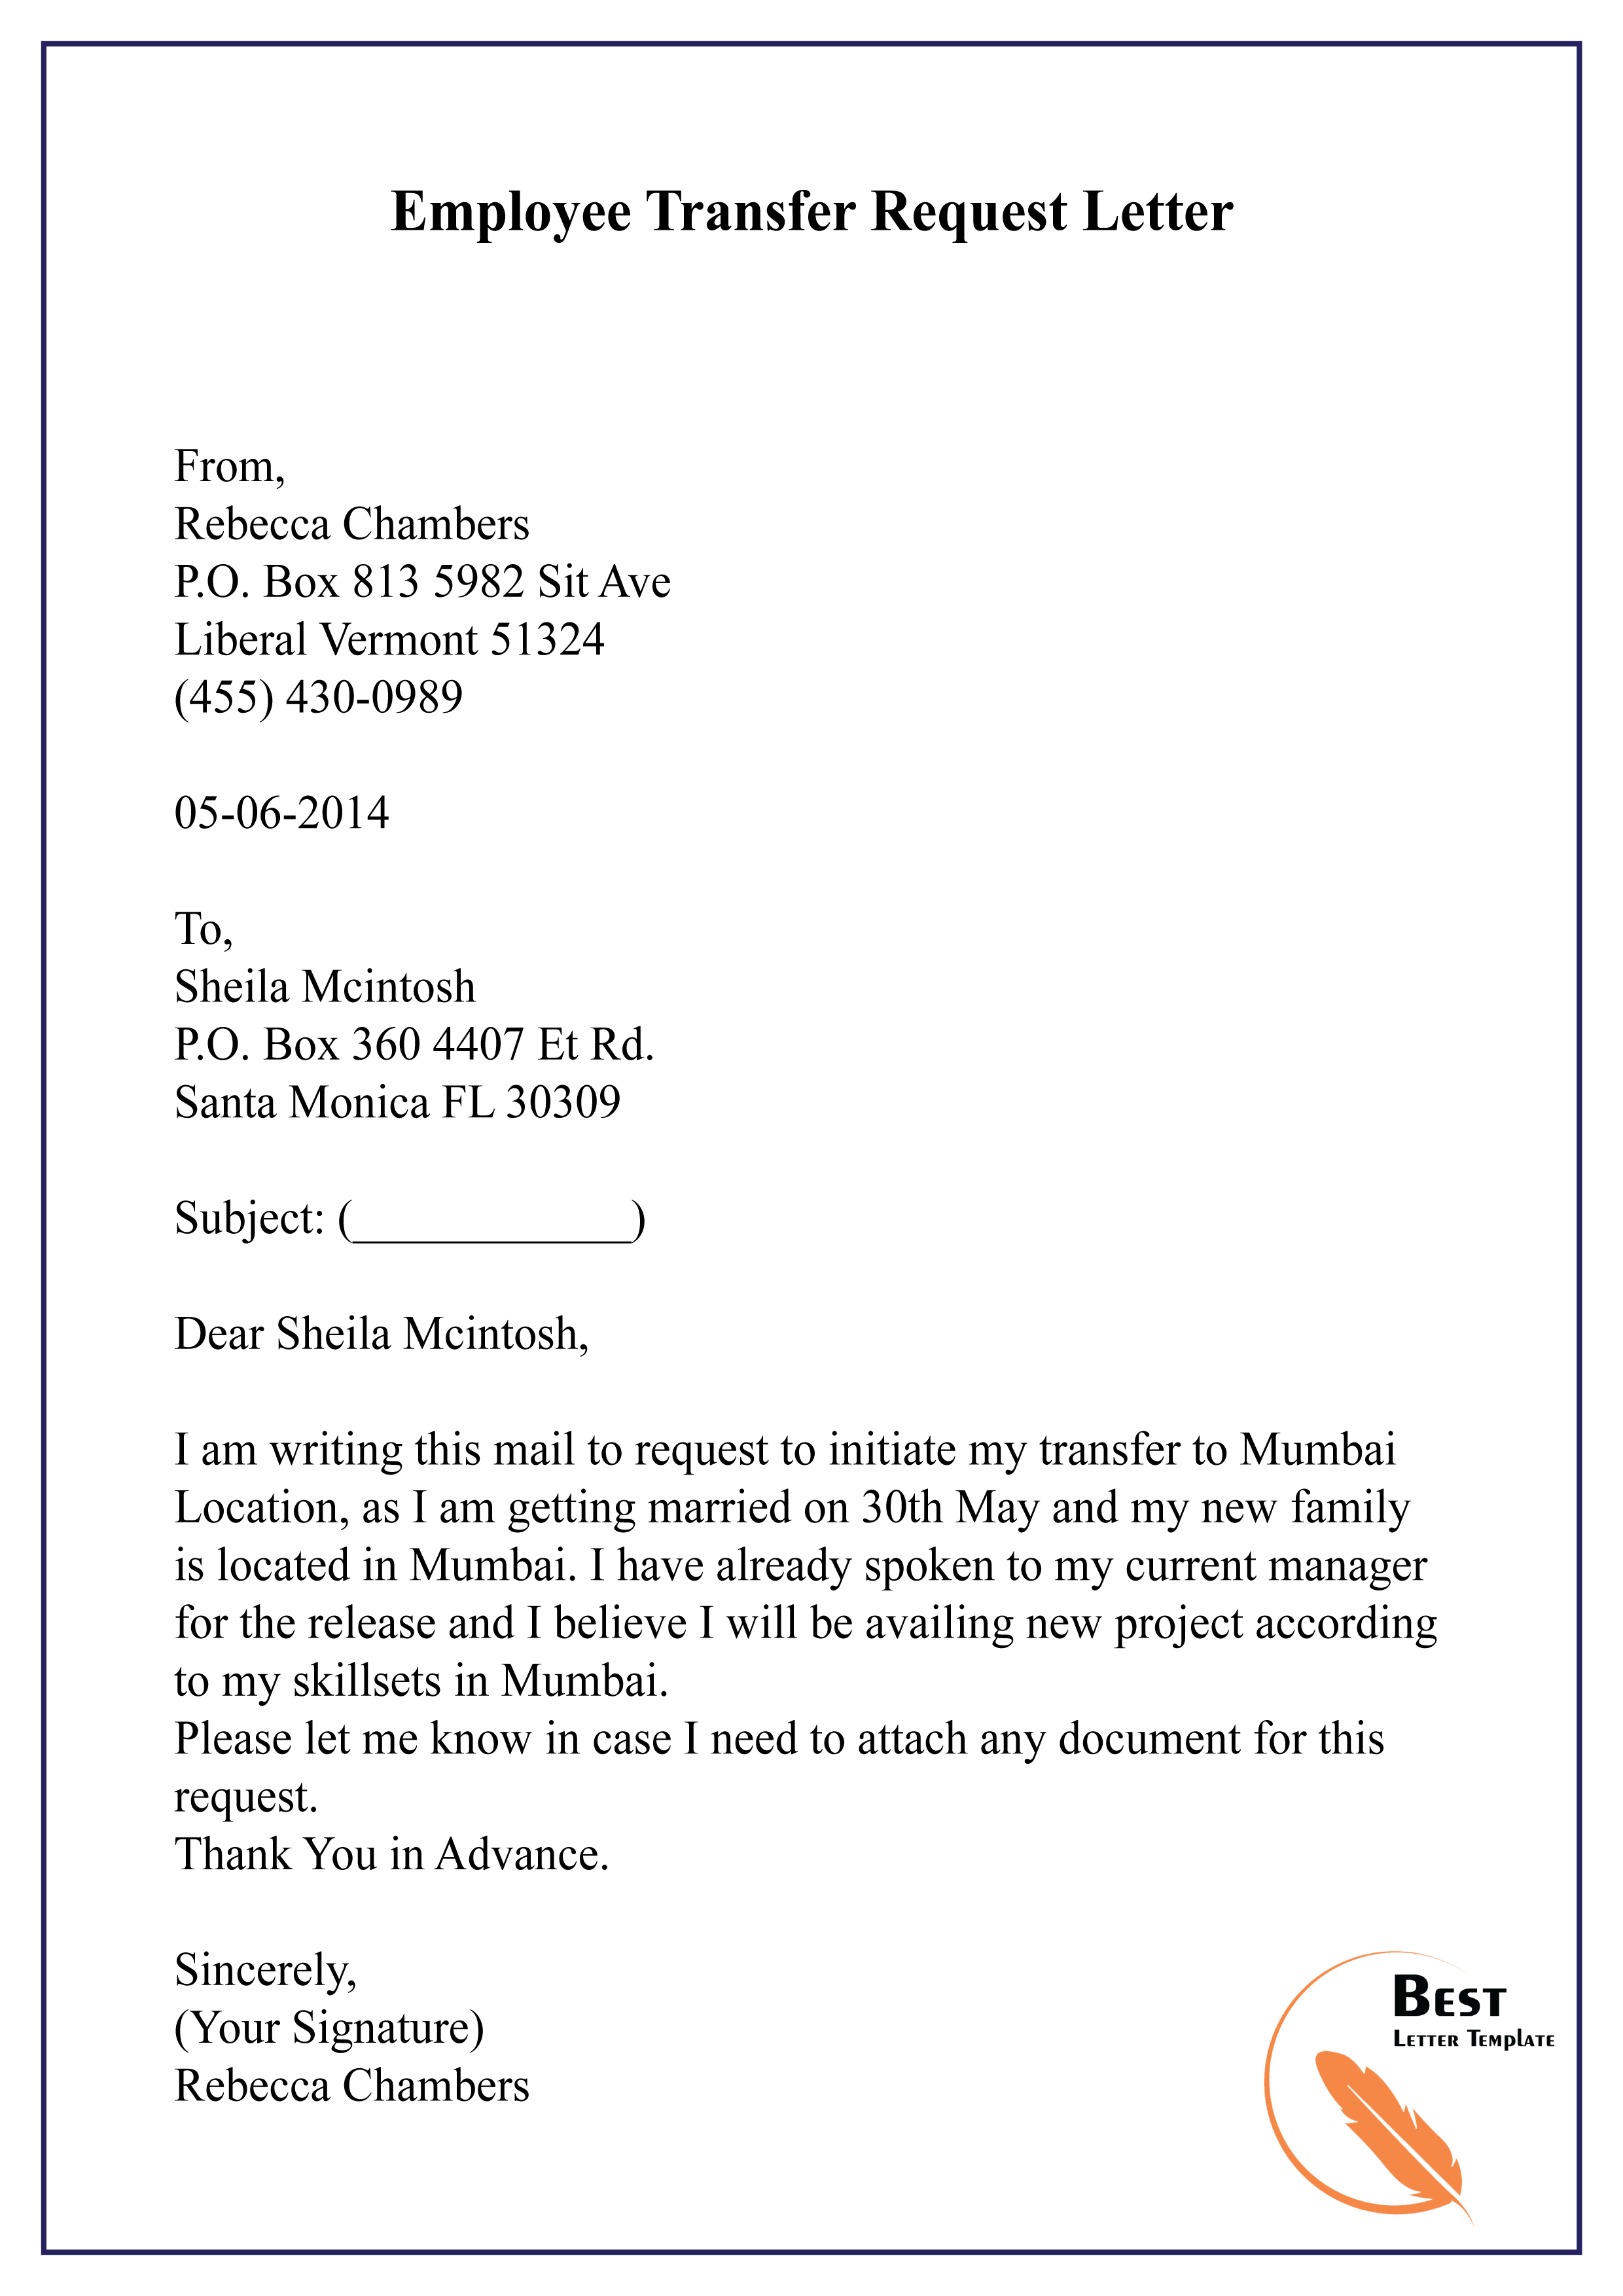 Sending request letter for job transfer